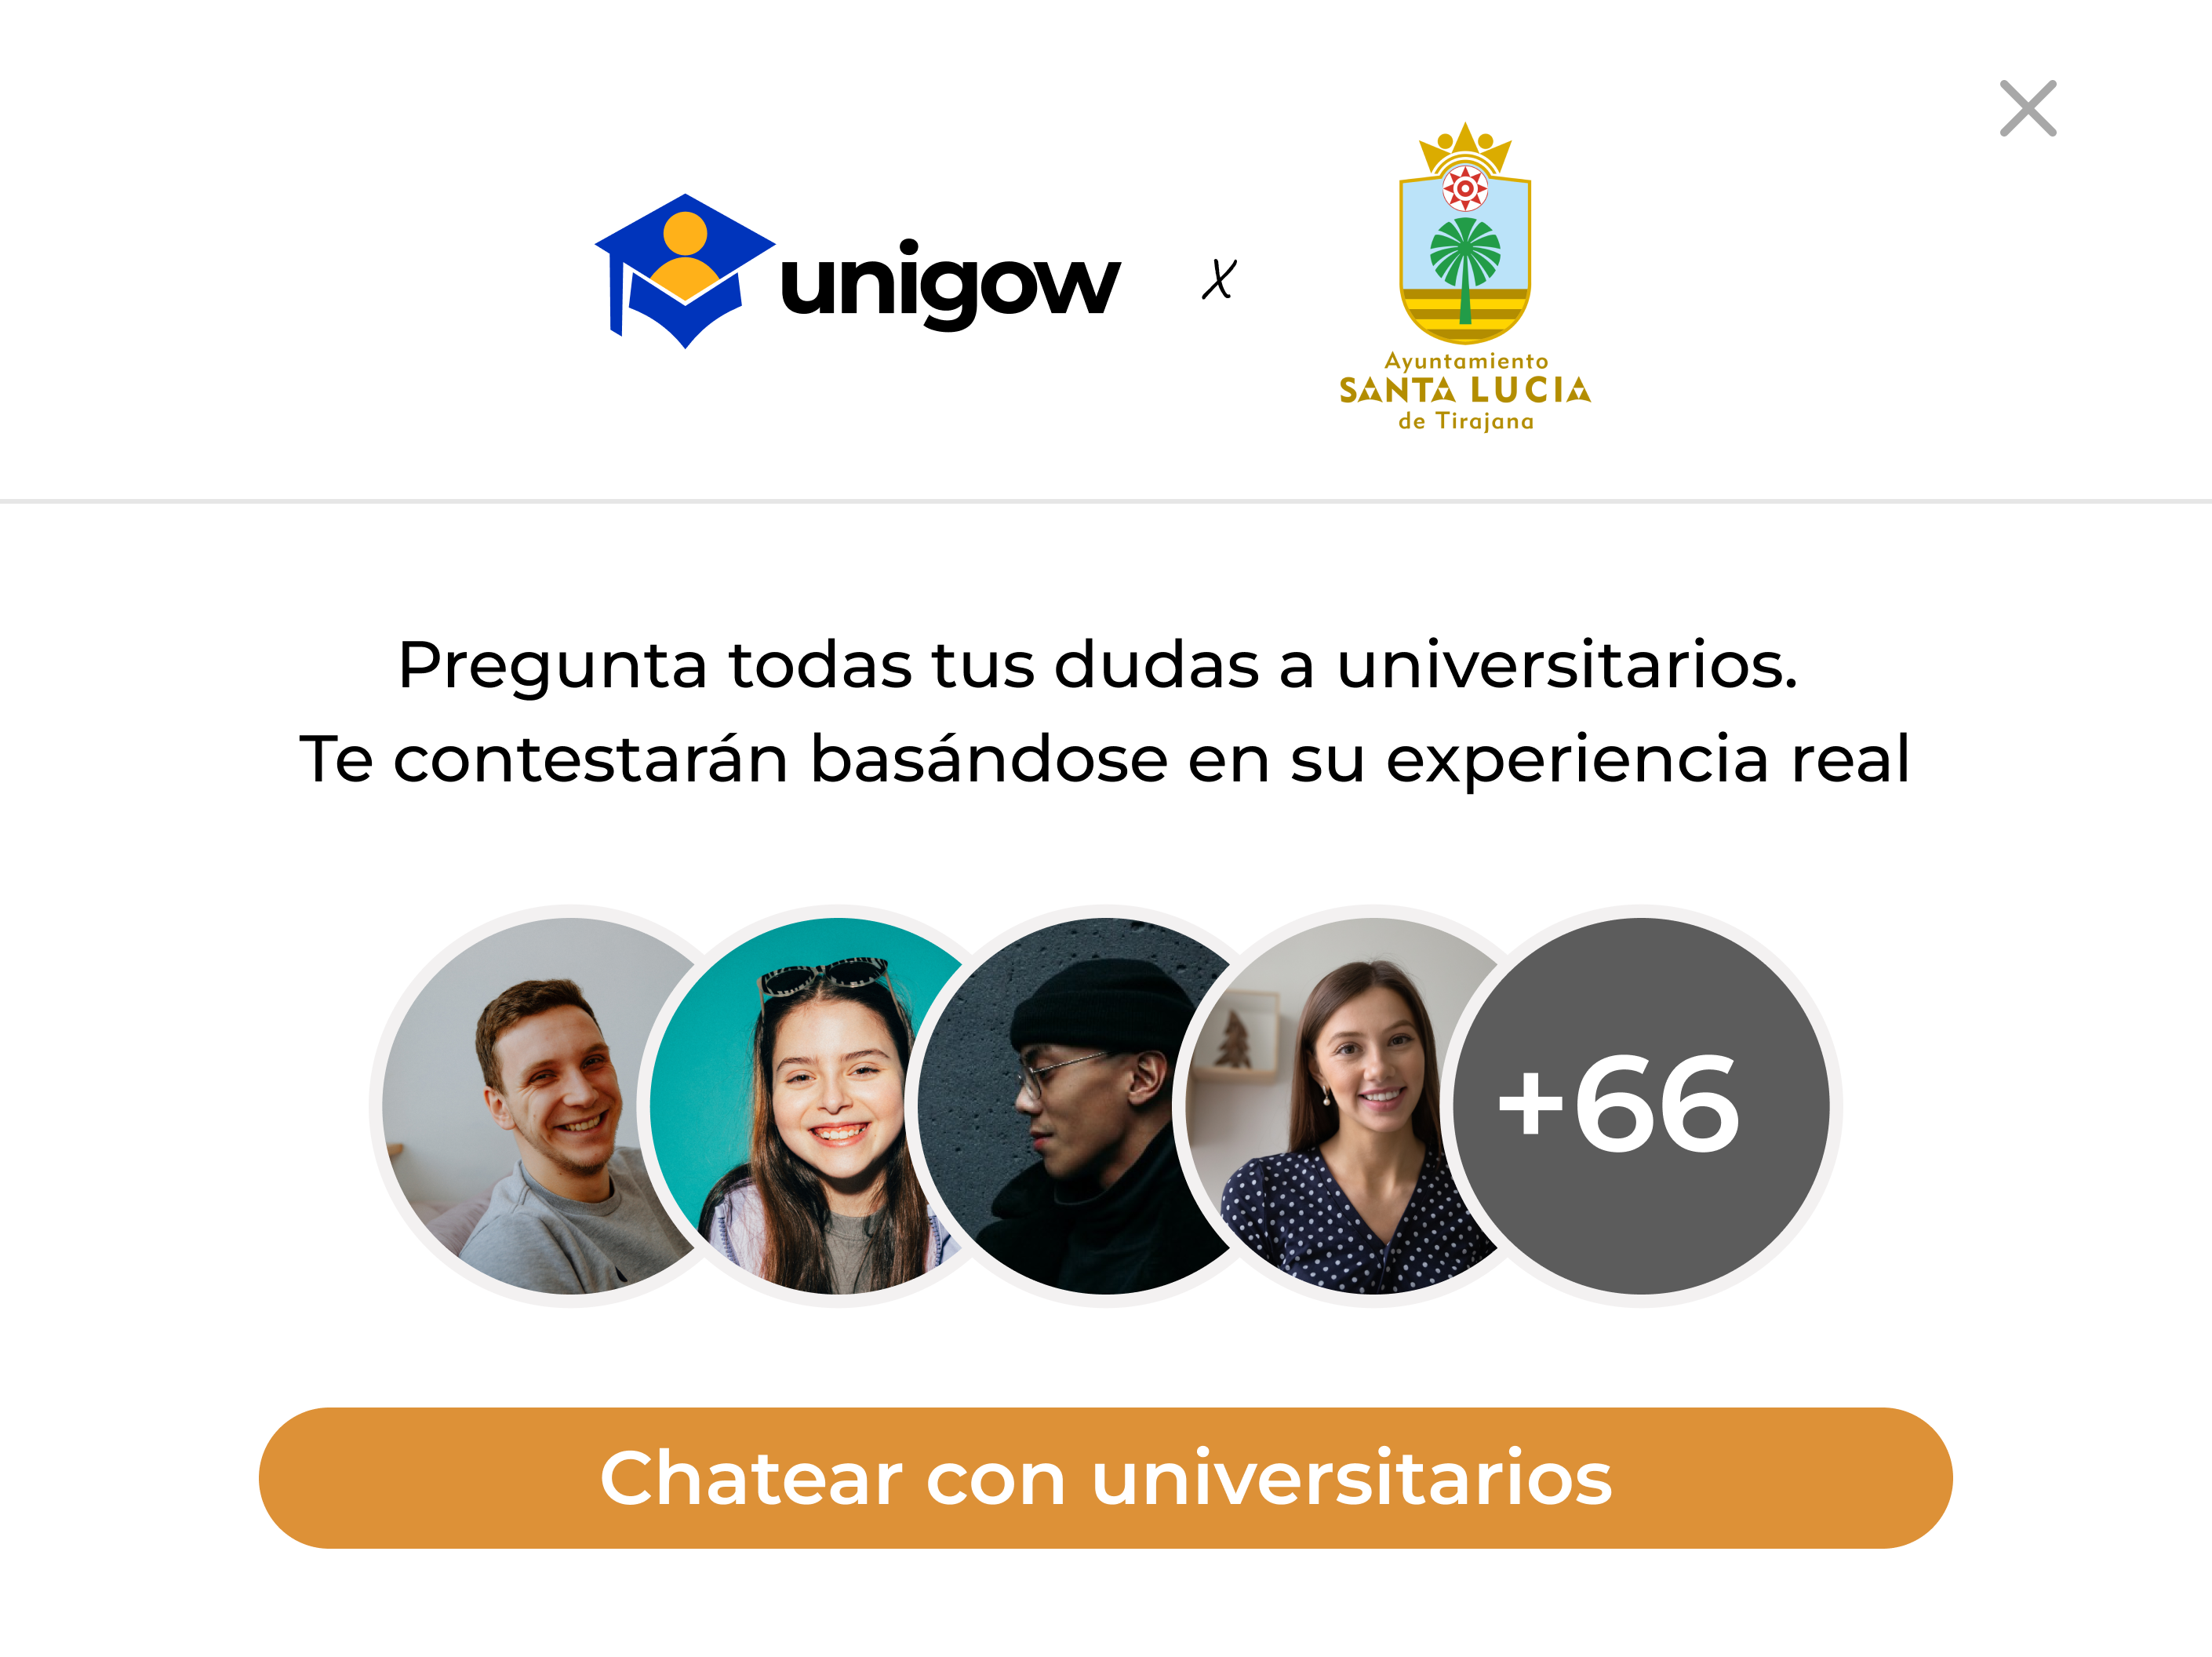 Unigow